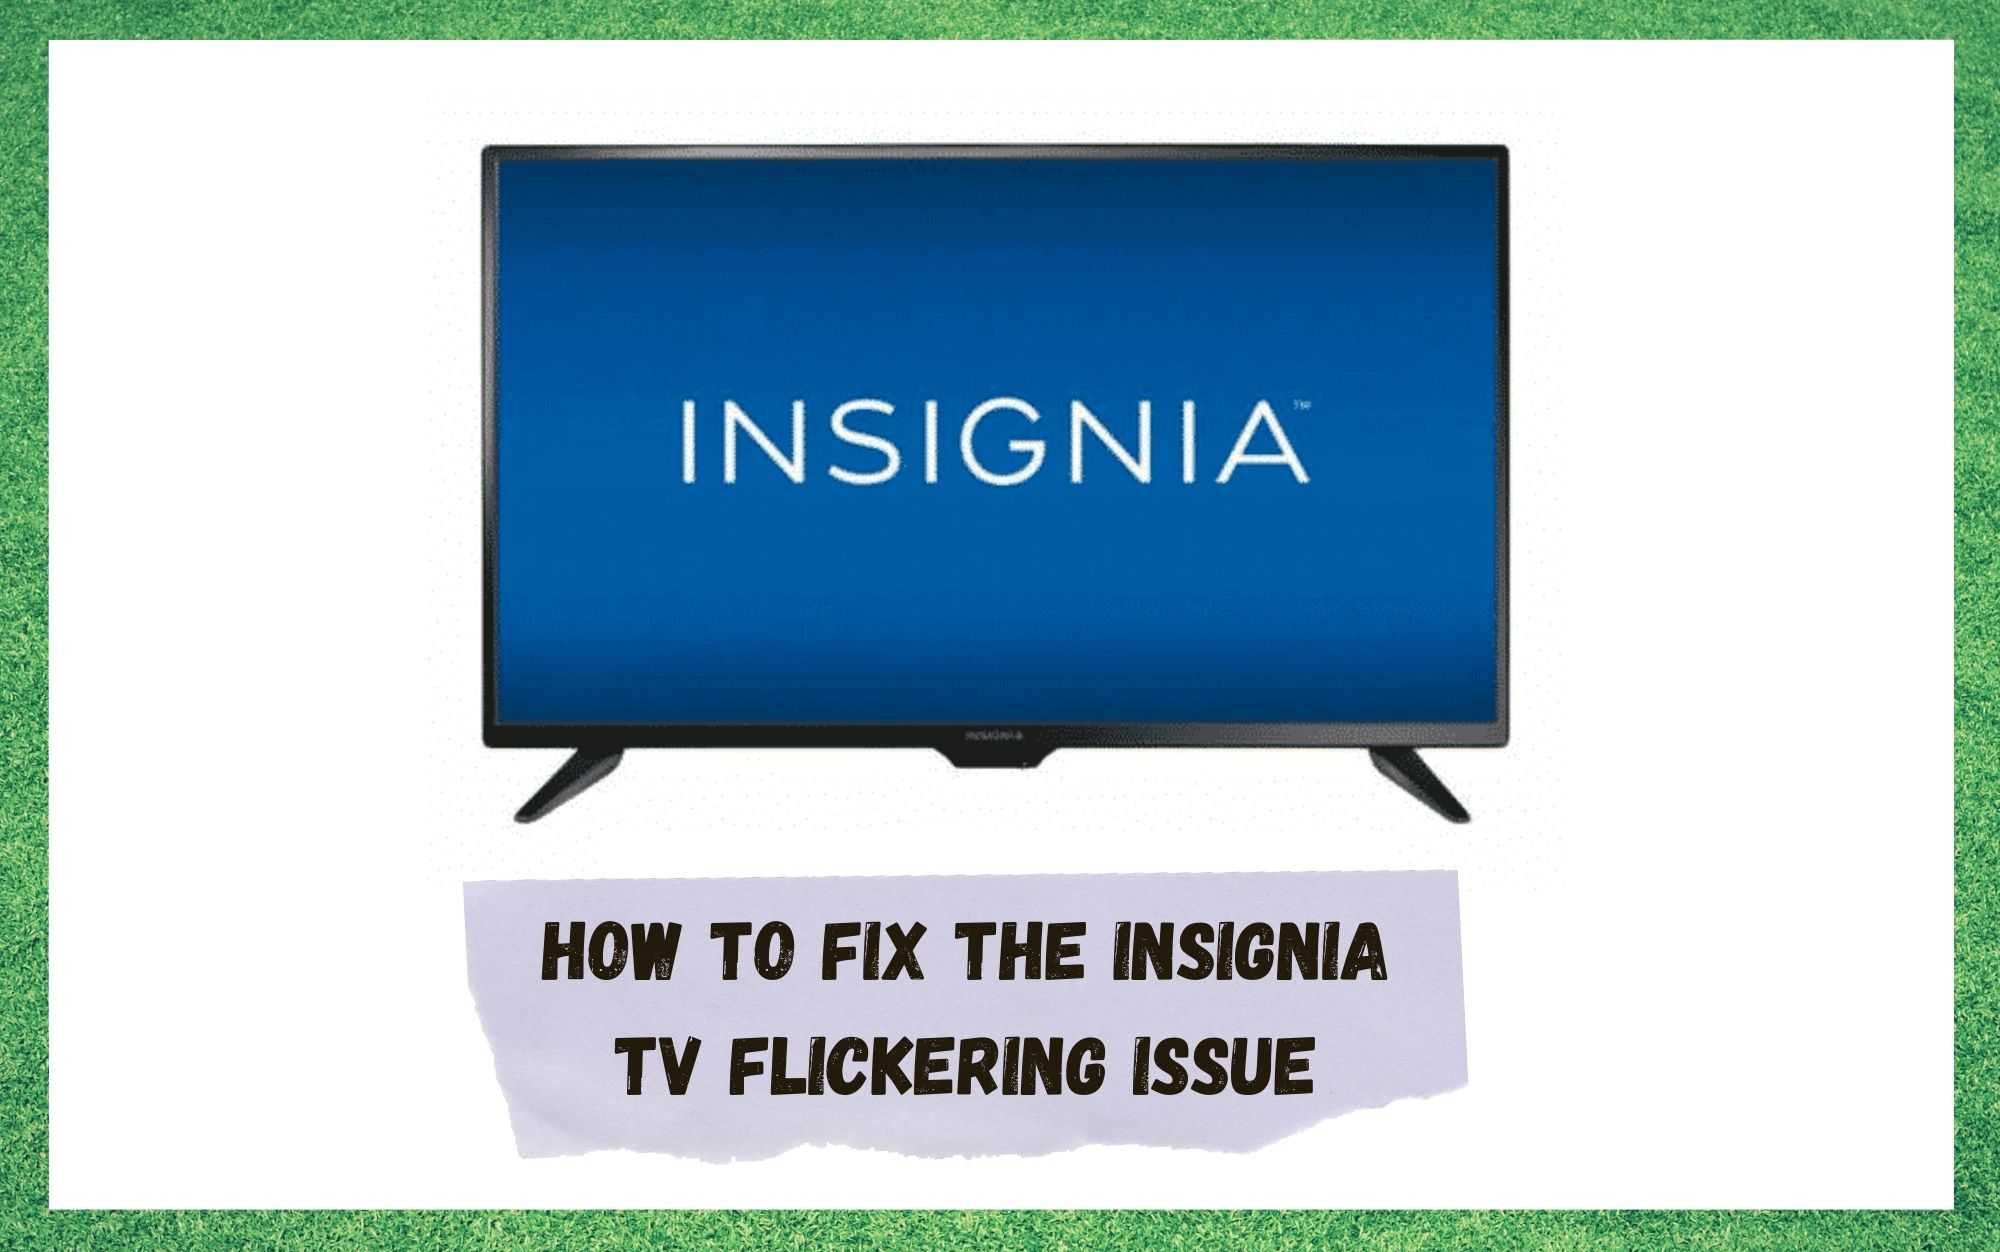 ઇન્સિગ્નિયા ટીવી ફ્લિકરિંગ સમસ્યાને ઠીક કરવાની 4 રીતો